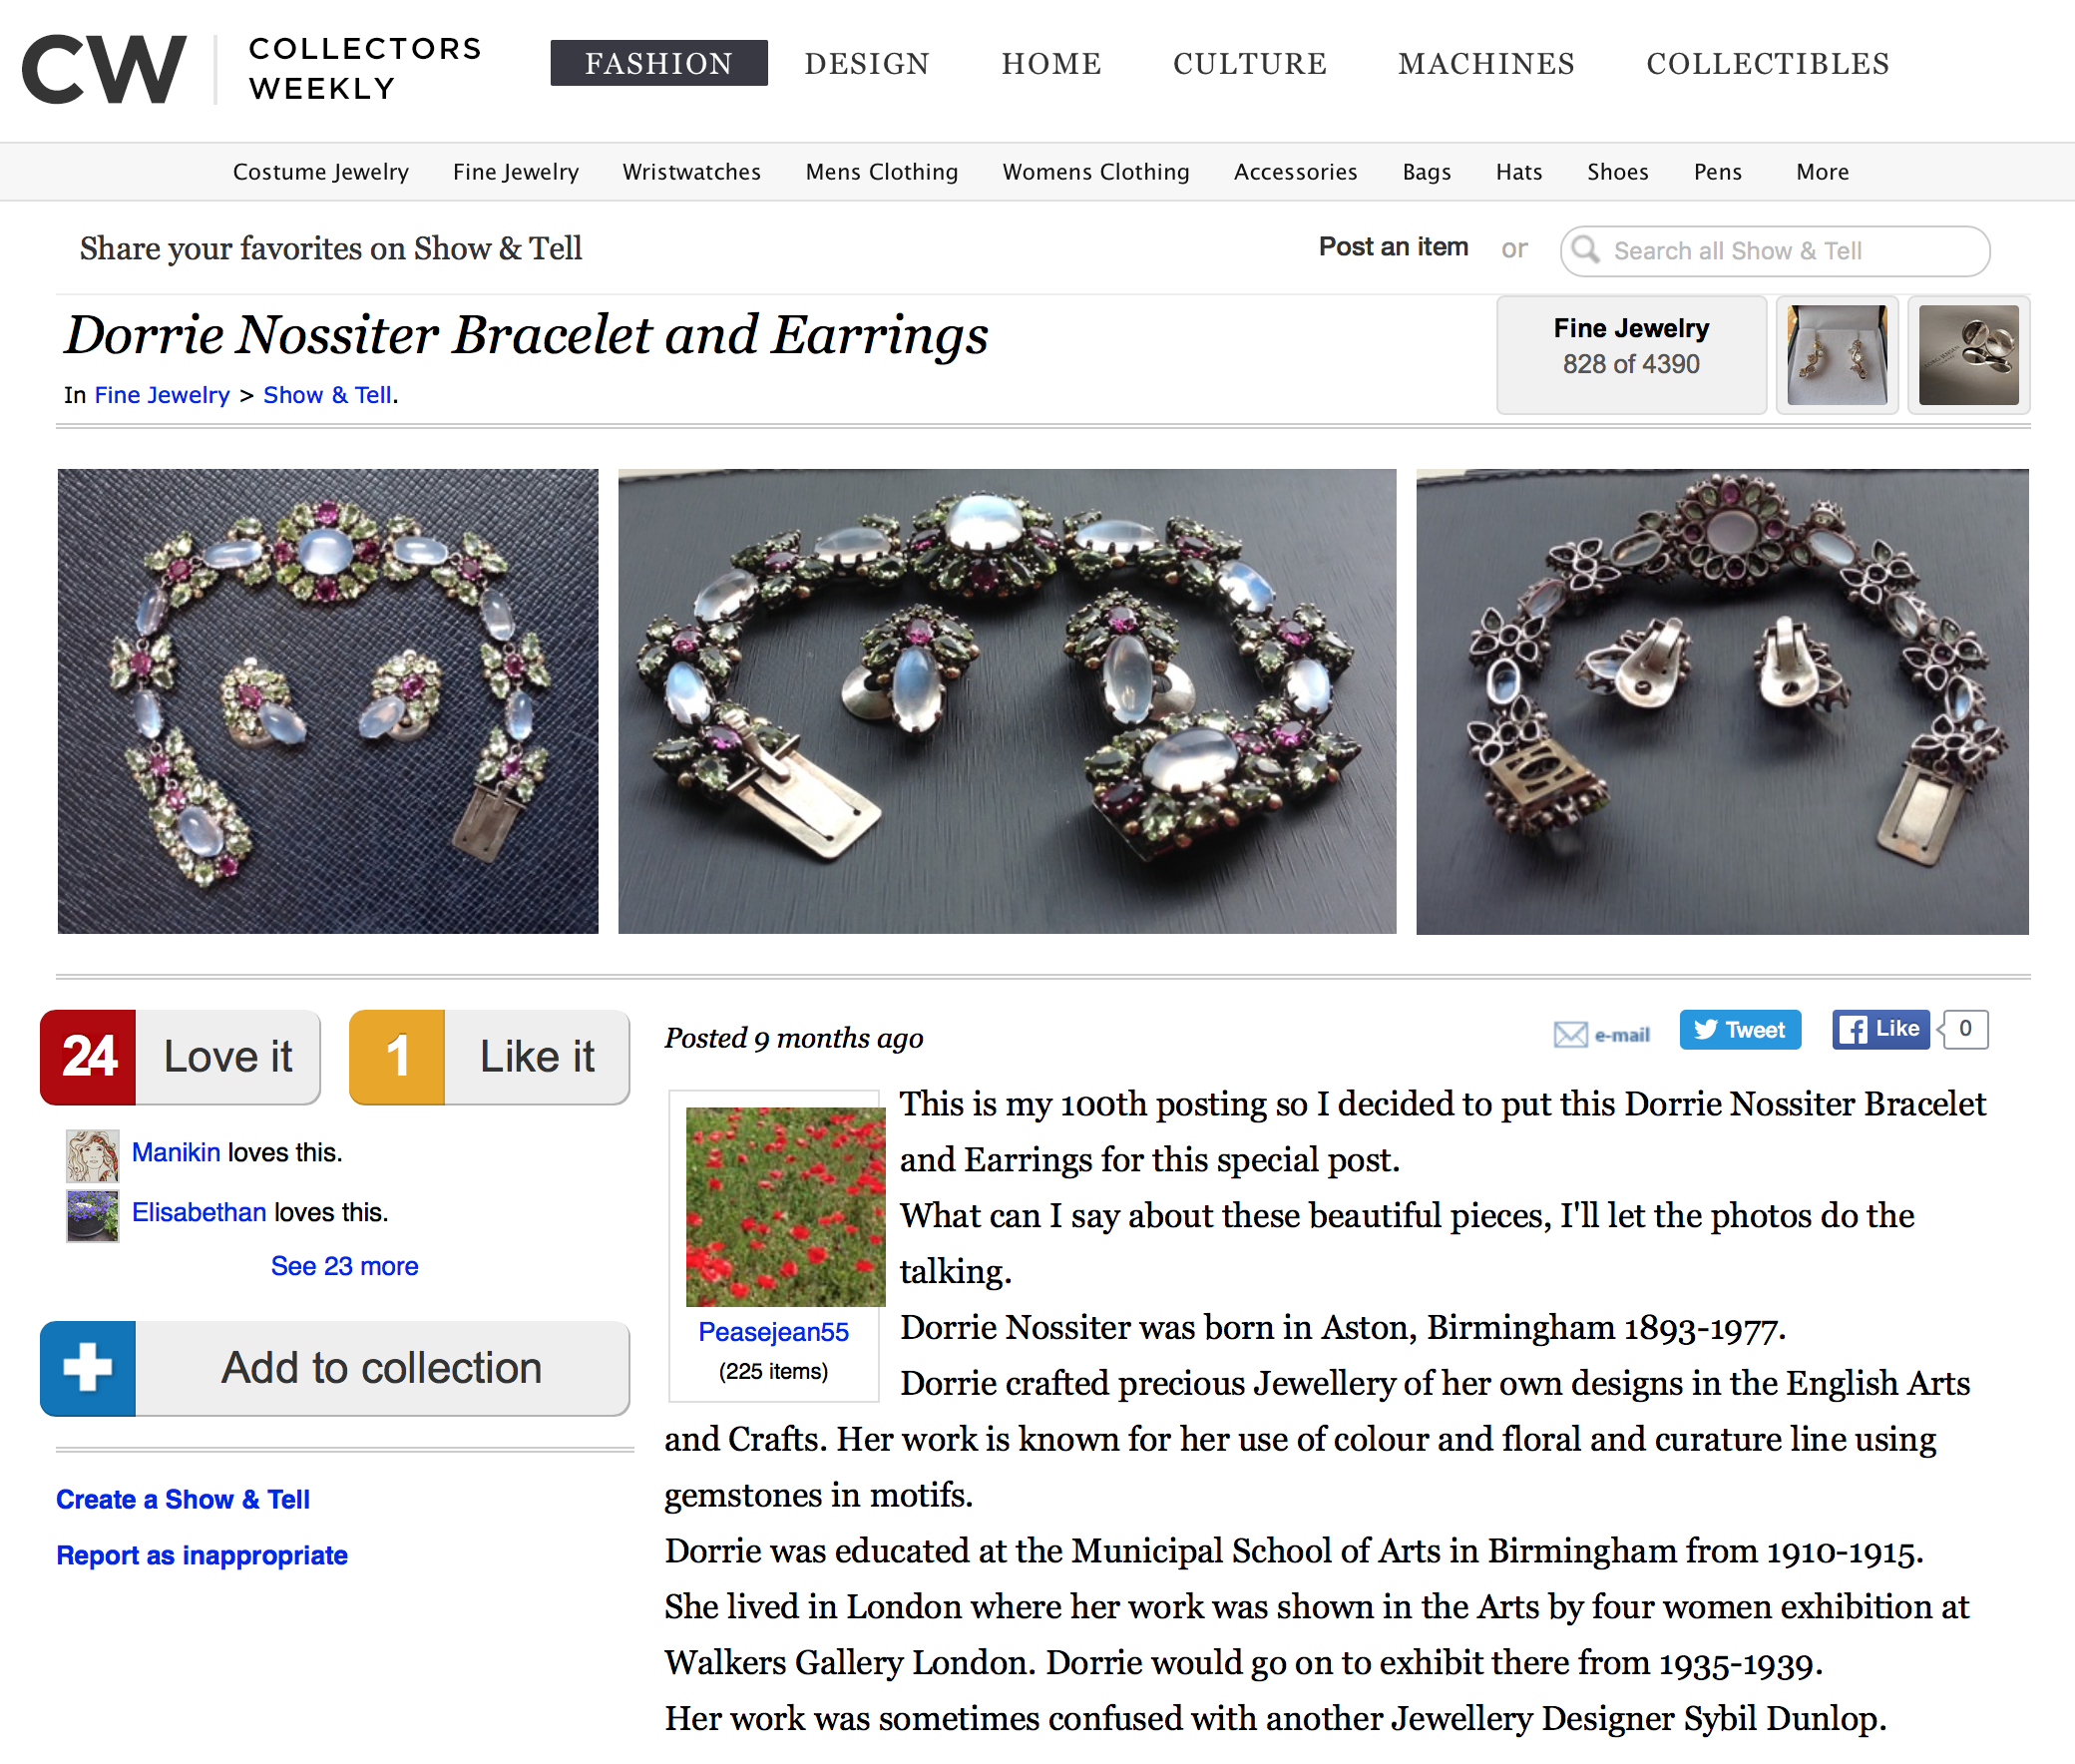 Screen capture of website discussing Dorrie's jewellery